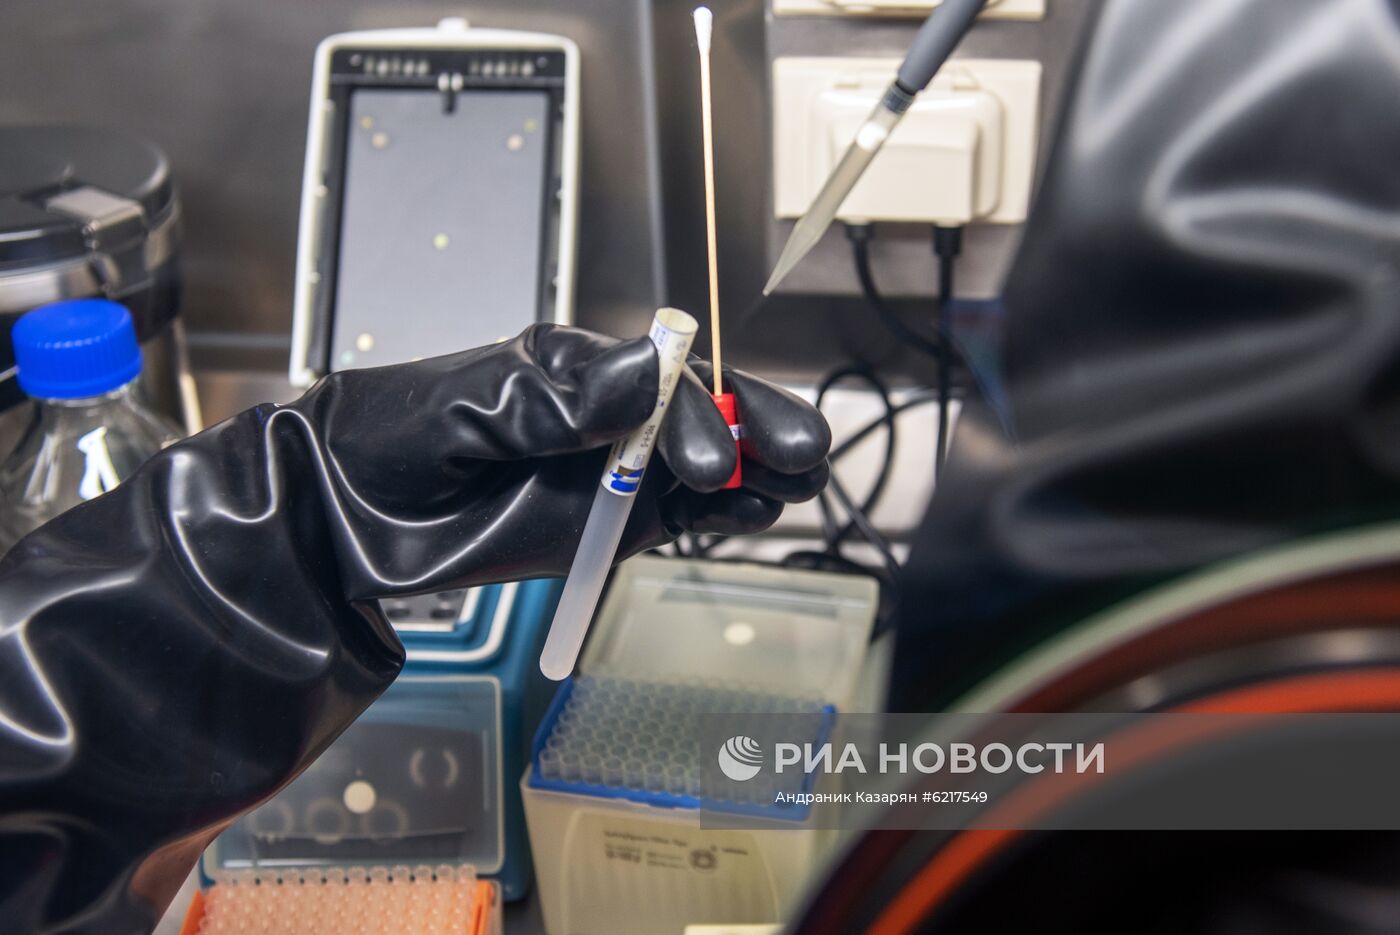 Российская мобильная лаборатория в Армении